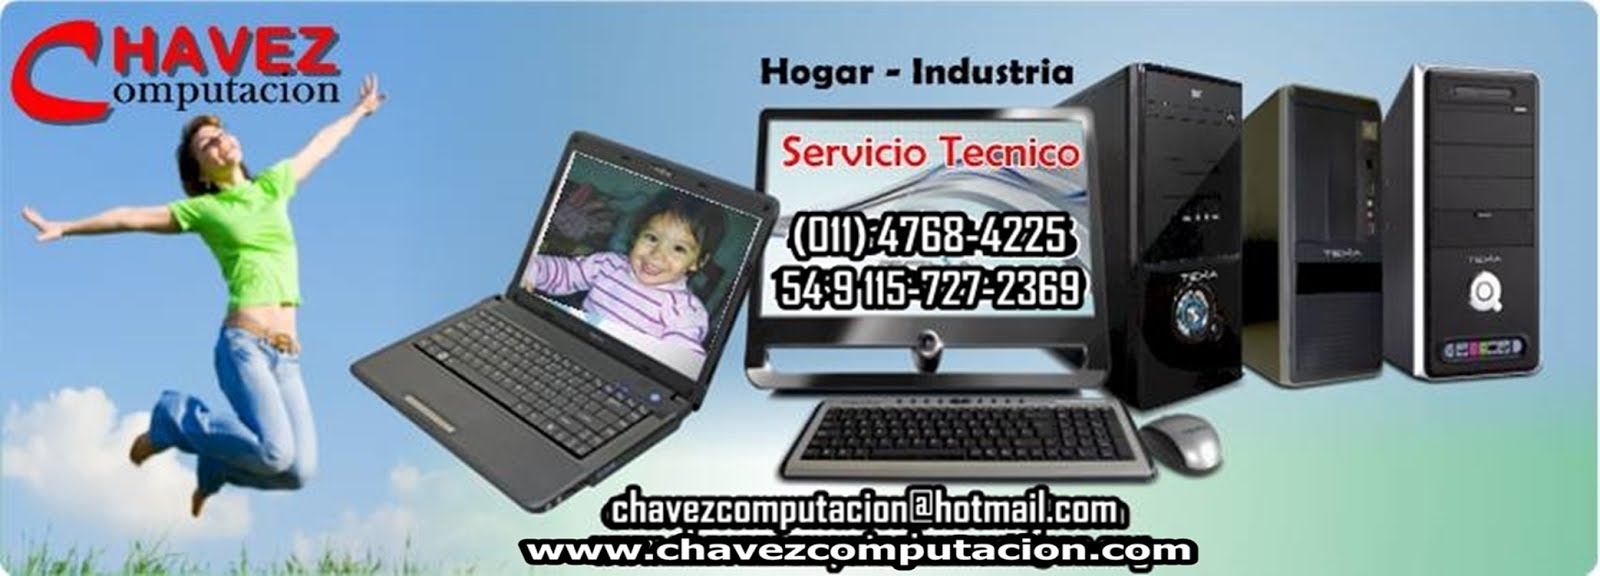 CHAVEZ Computacion Servicio Tecnico Reparacion Venta PC Computadora Notebook Lex Doctor a Domicilio